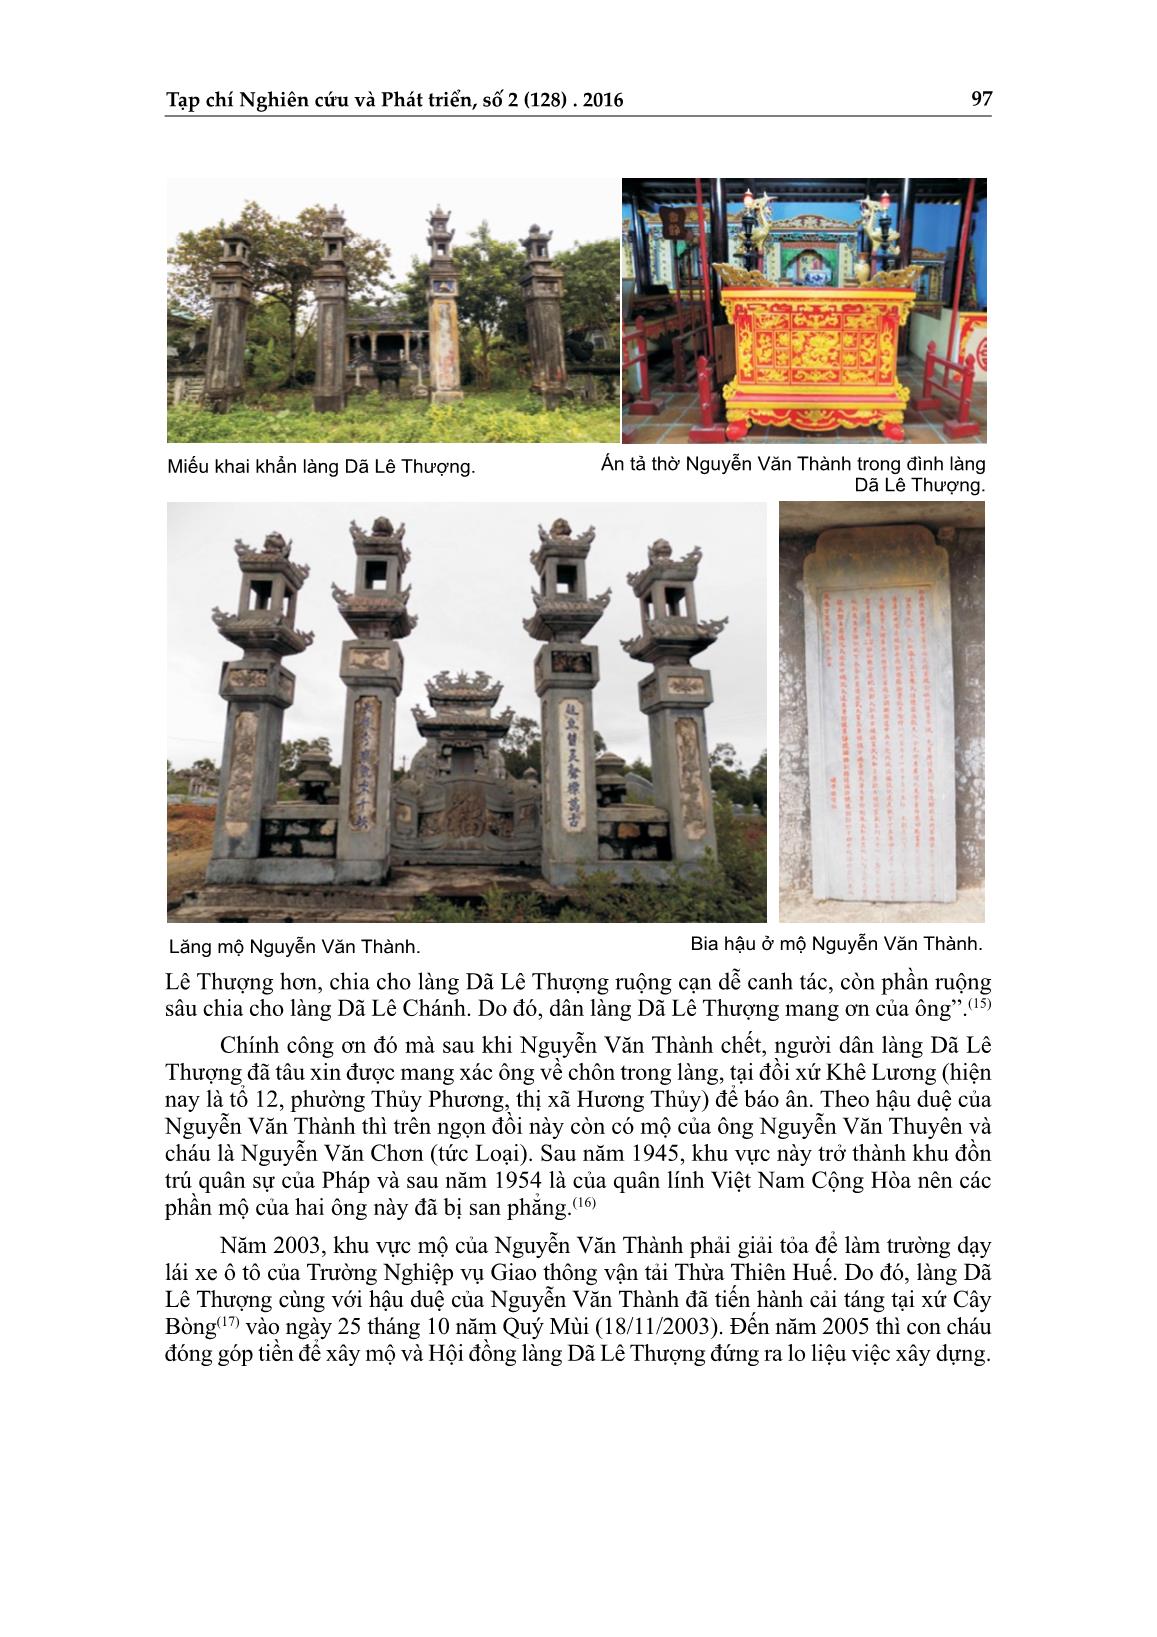 Dấu tích danh nhân Nguyễn Văn Thành trên đất Thừa Thiên Huế trang 3